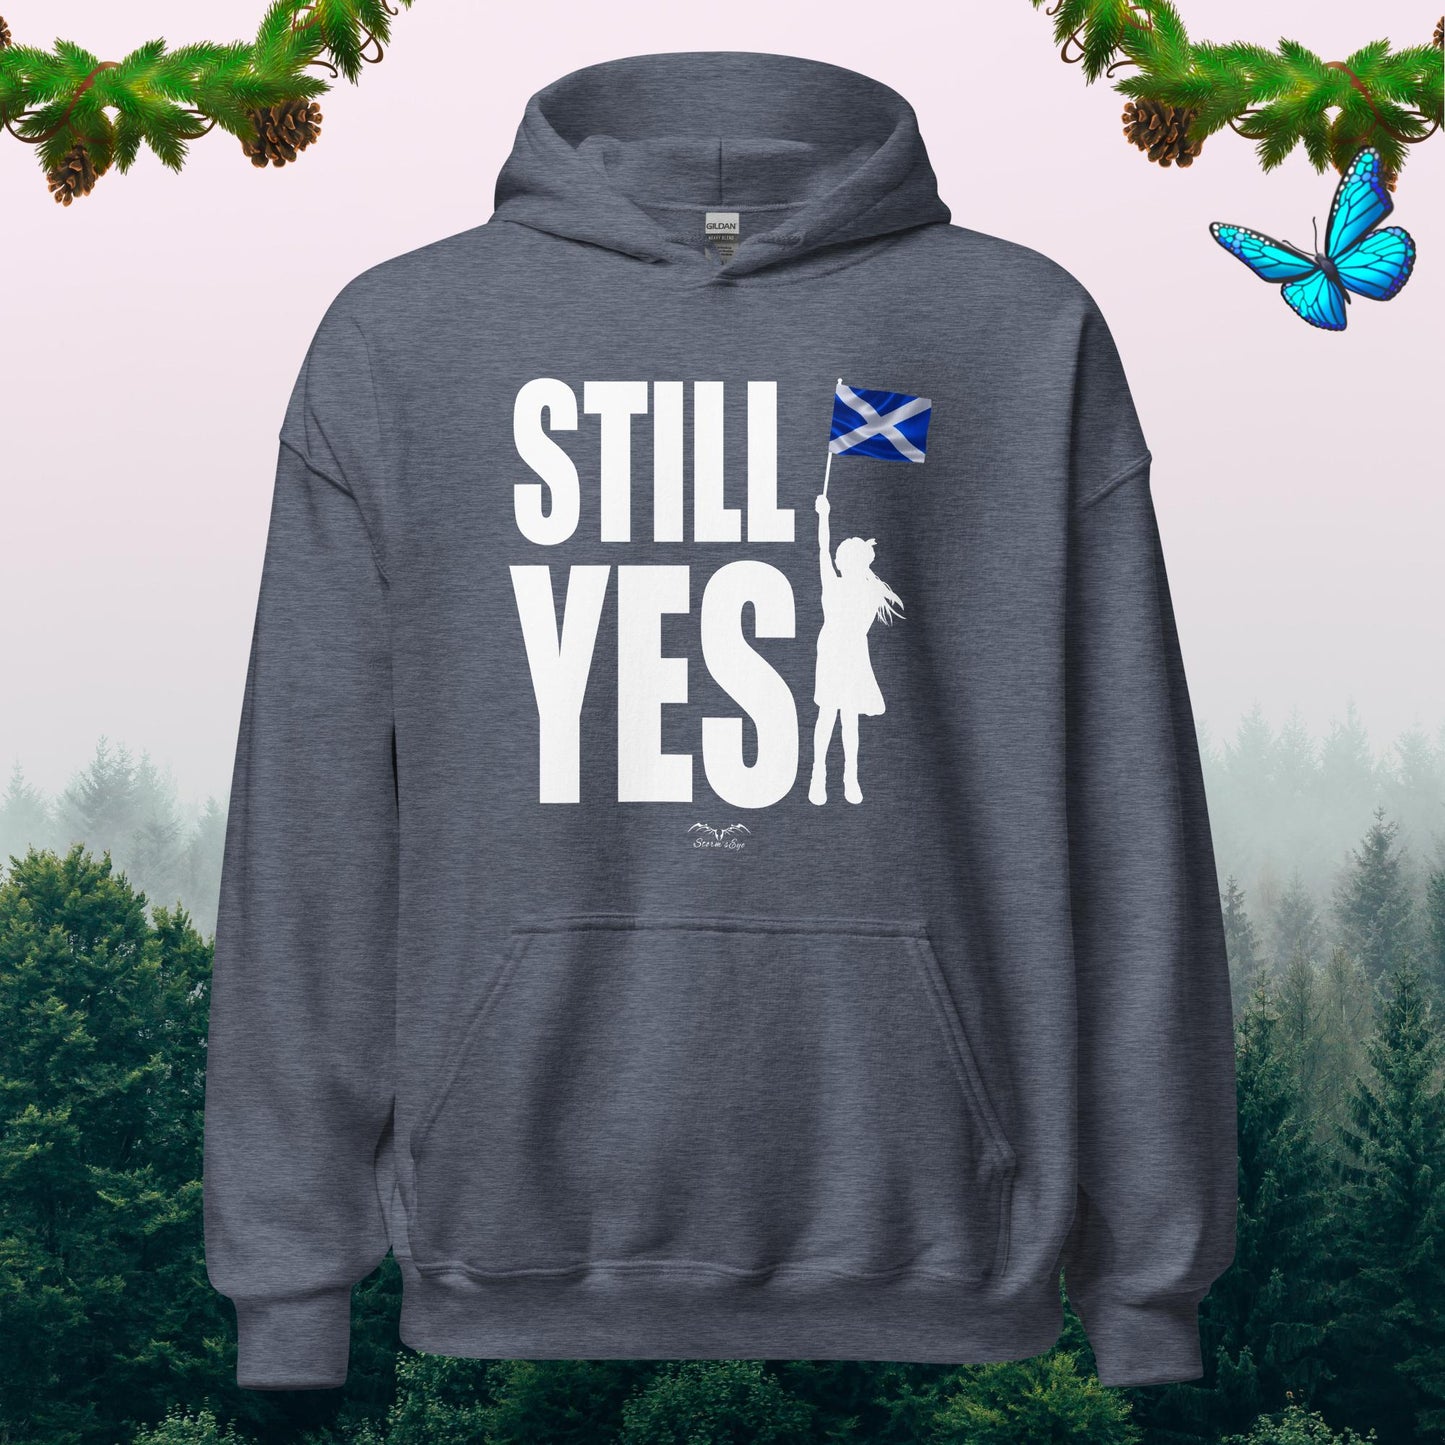 still yes scottish independence Hoodie, denim blue by Stormseye Design